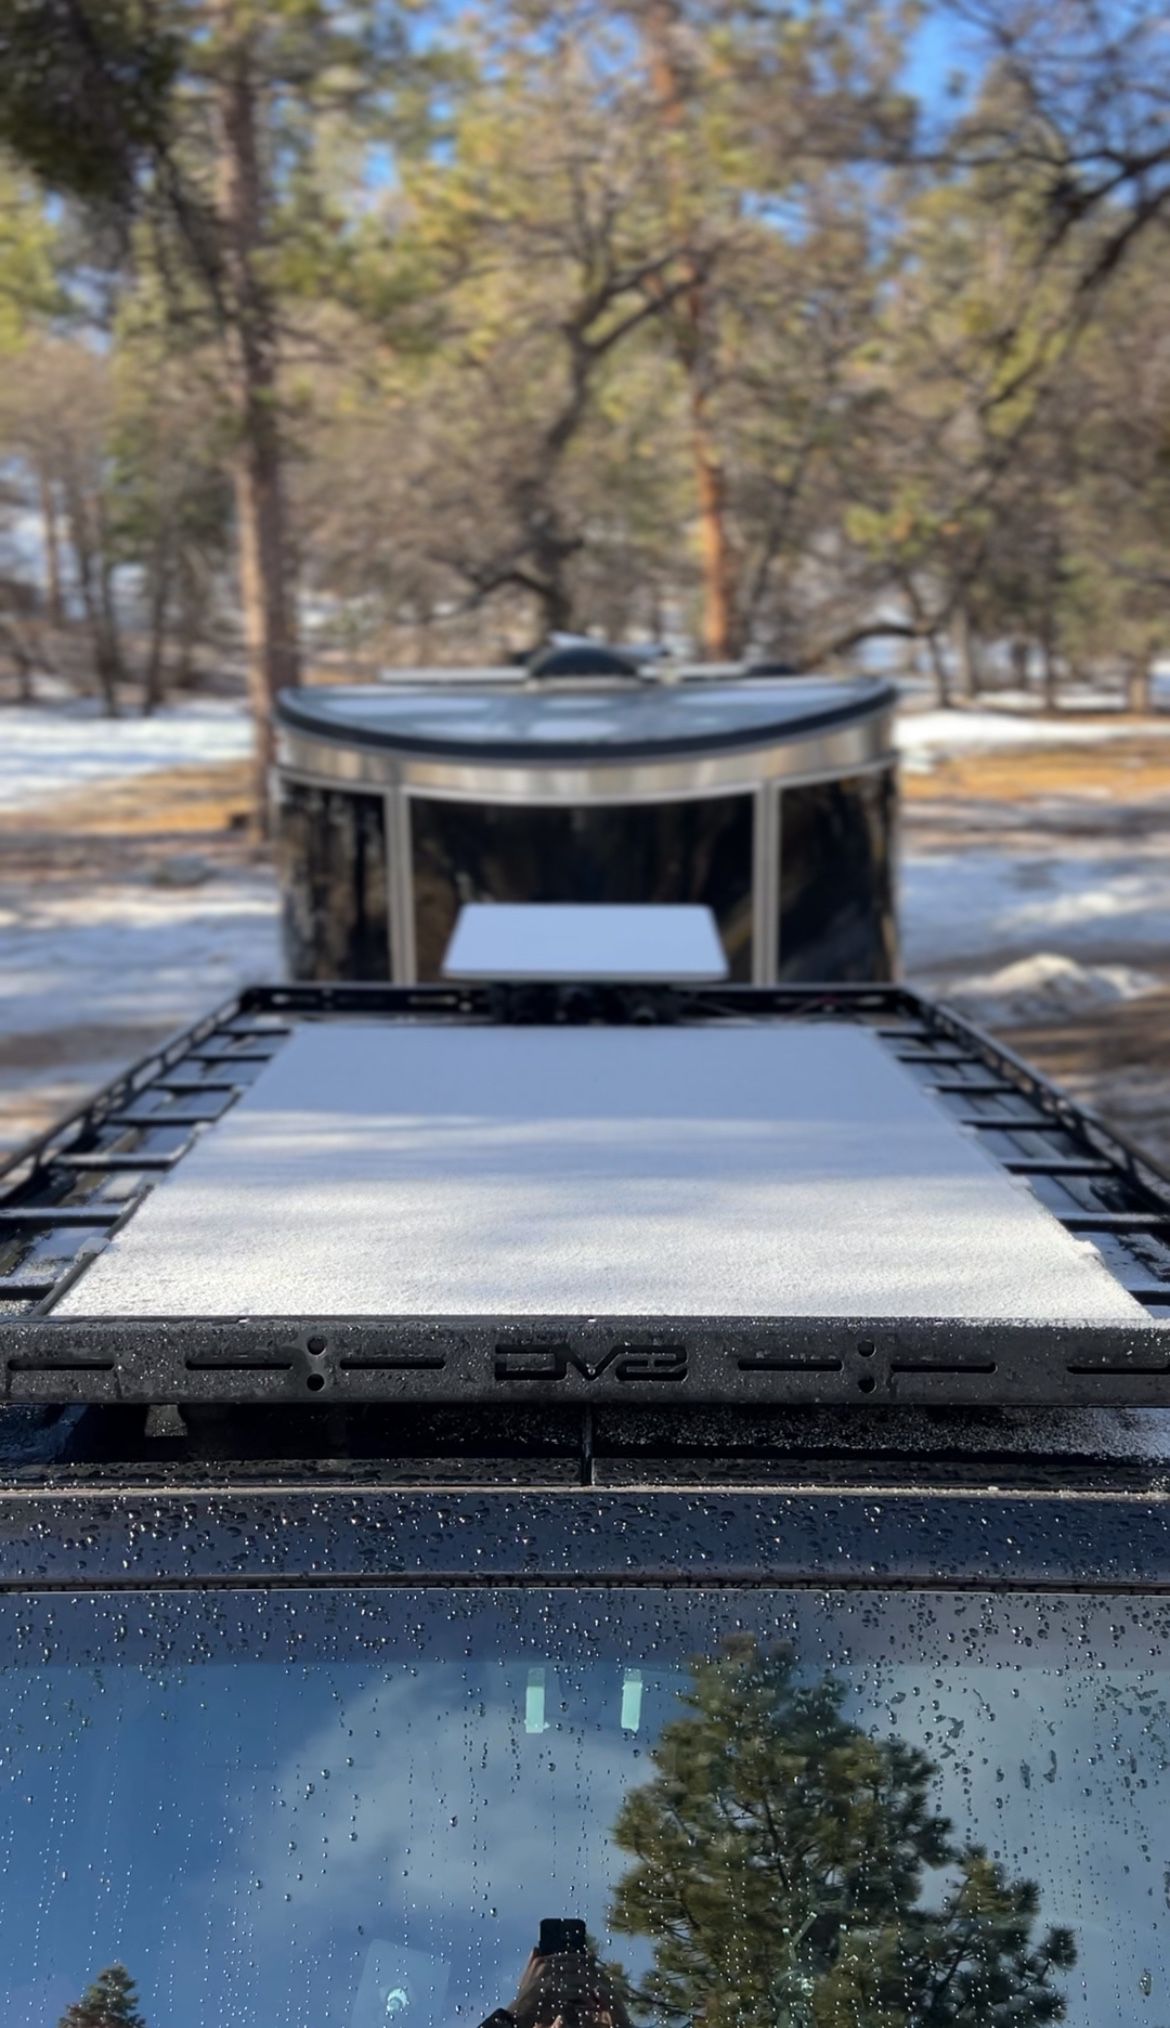 DV8 Offroad Roof Rack (18-22 Jeep Wrangler JL 4-Door)